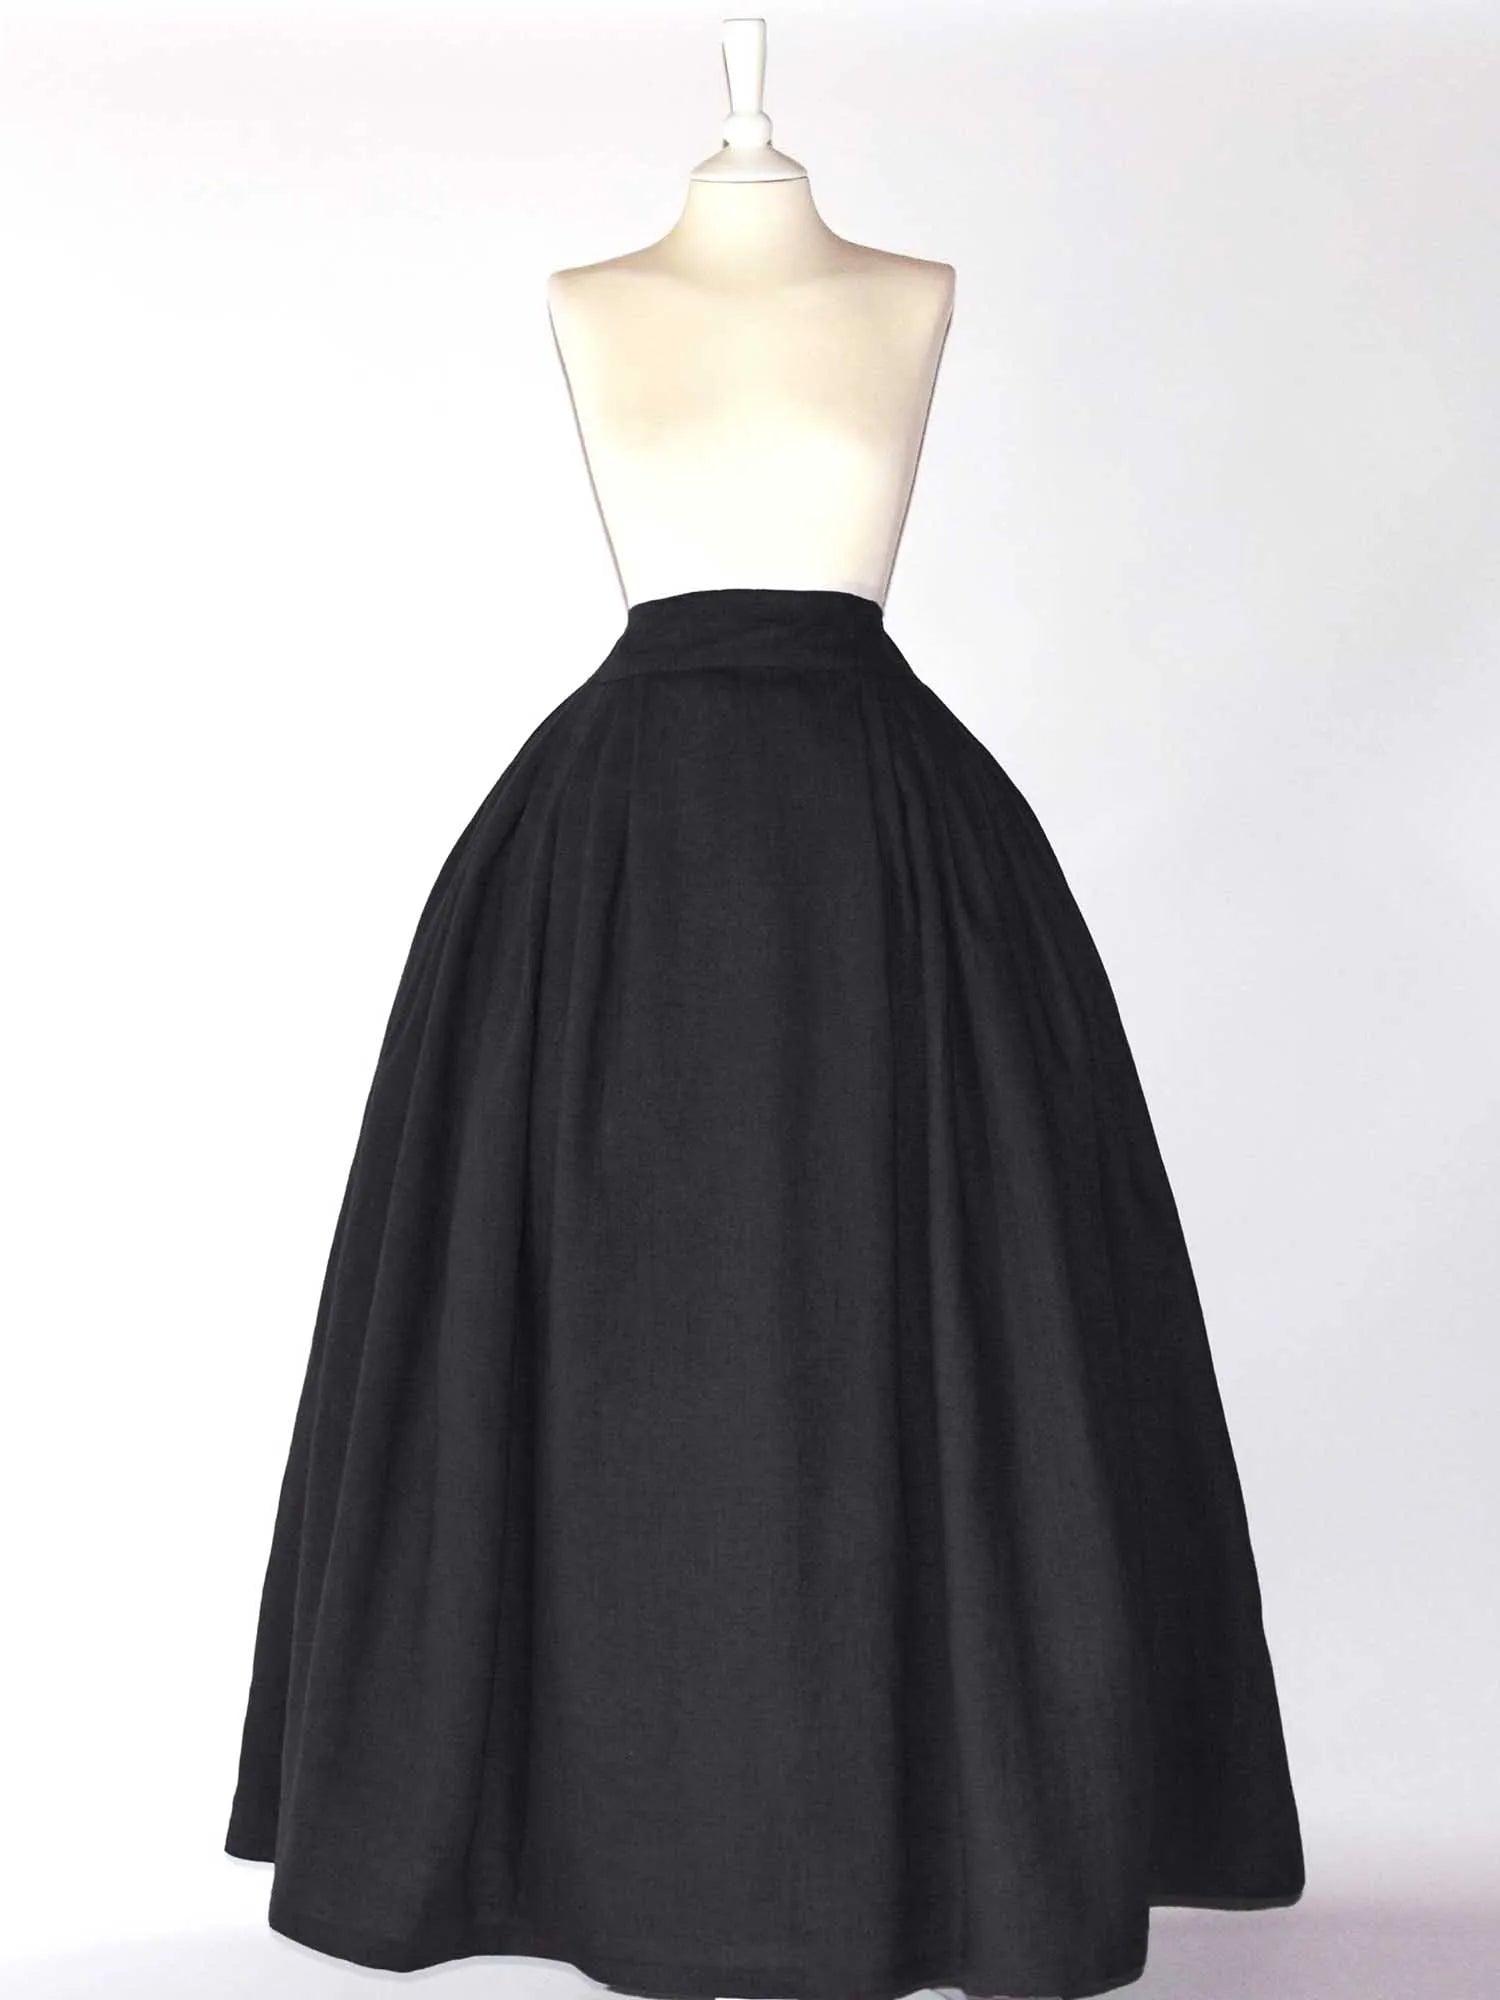 HELOISE, Historical Skirt in Black Linen - Atelier Serraspina